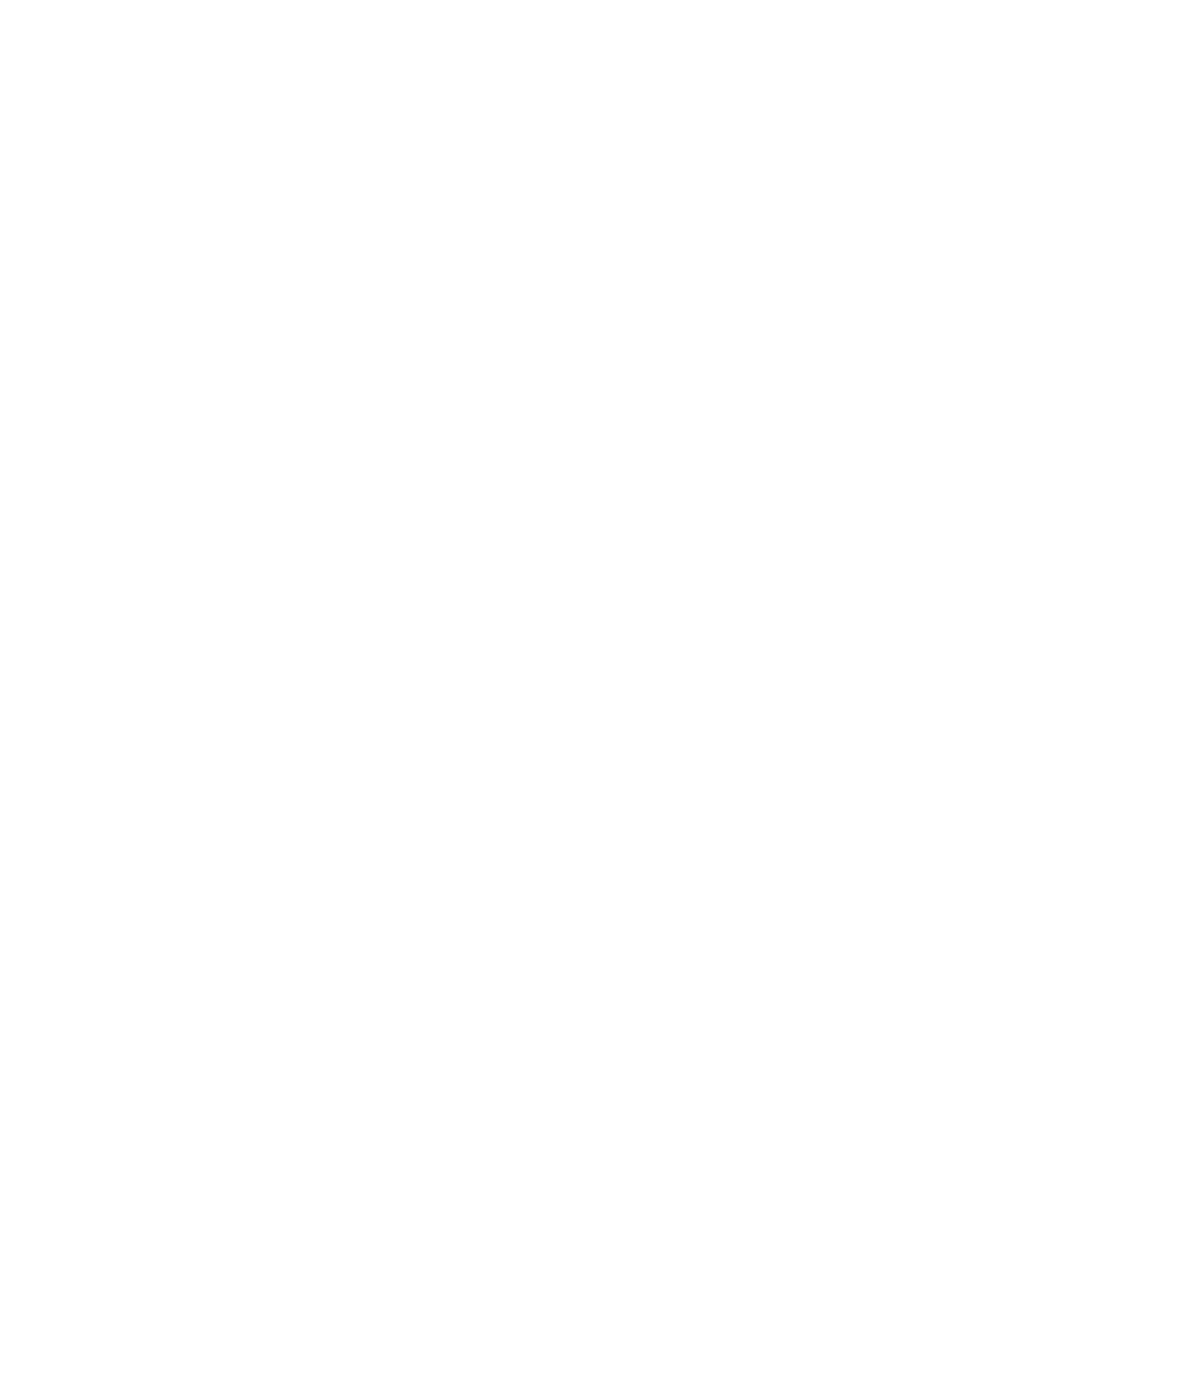 ProductionPro